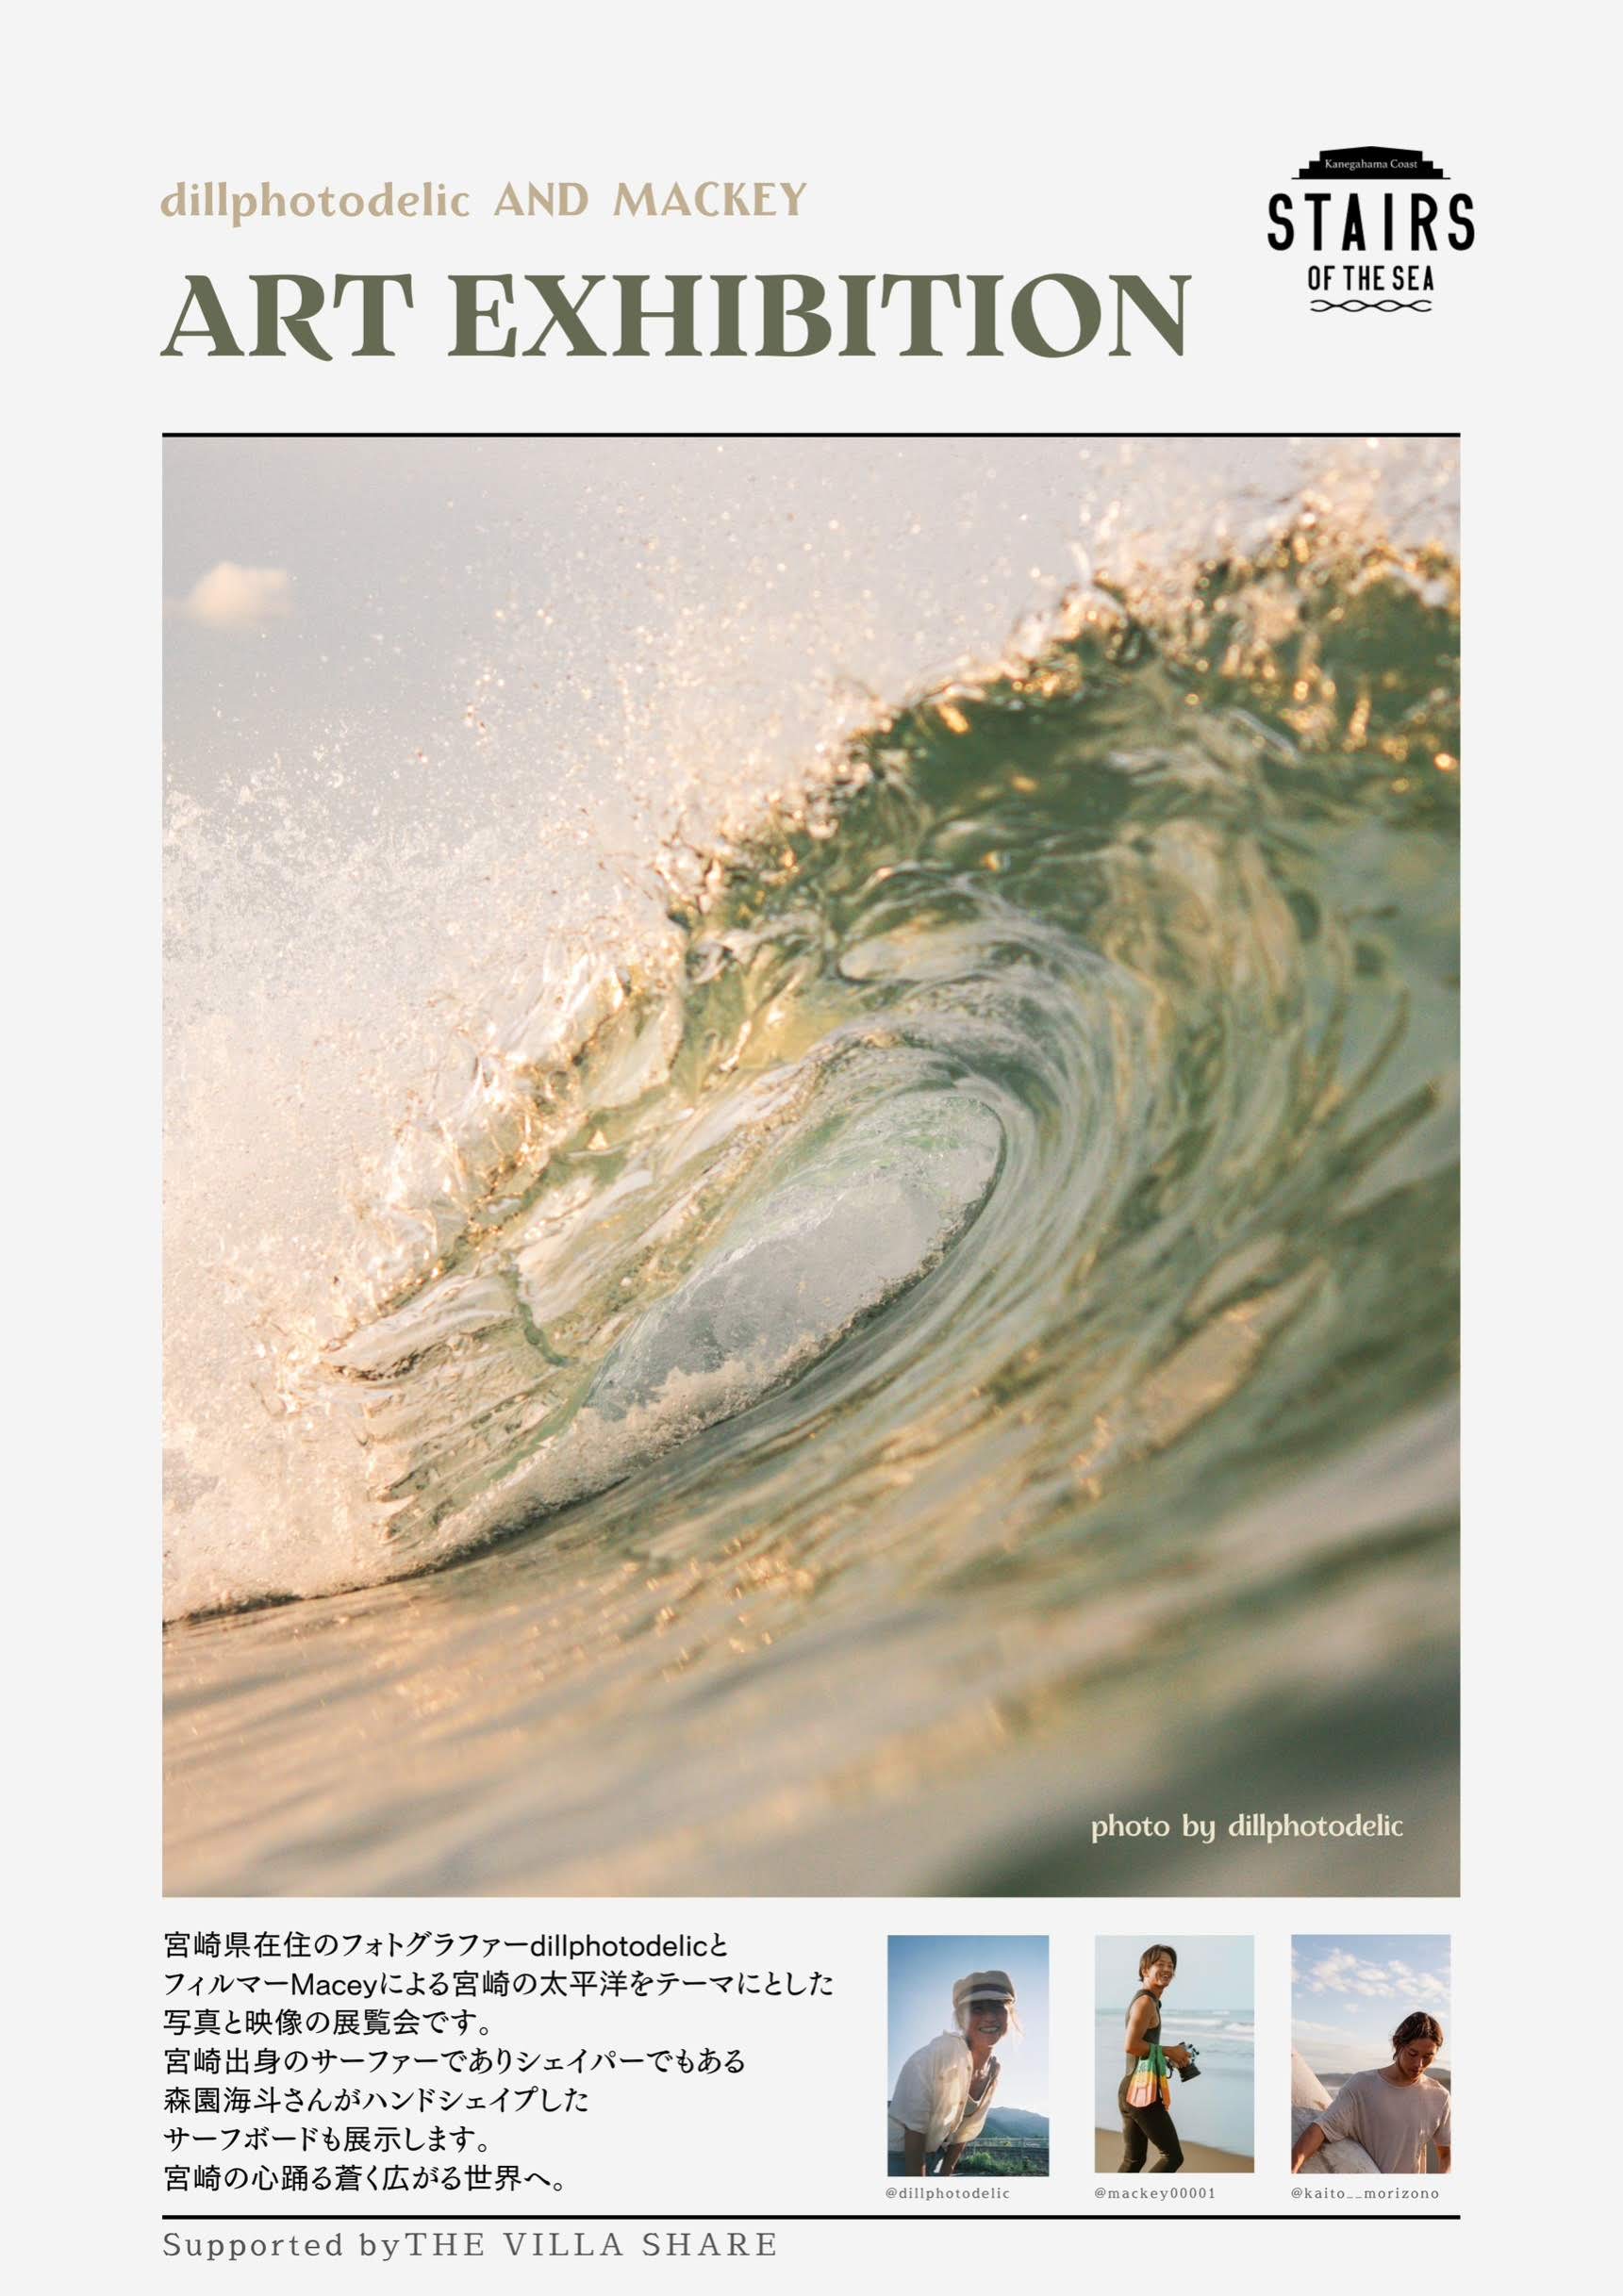 映像・写真・サーフボード。宮崎の海を愛する3人の蒼き感性。at 日向市ステアーズ・オブ・ザ・シー